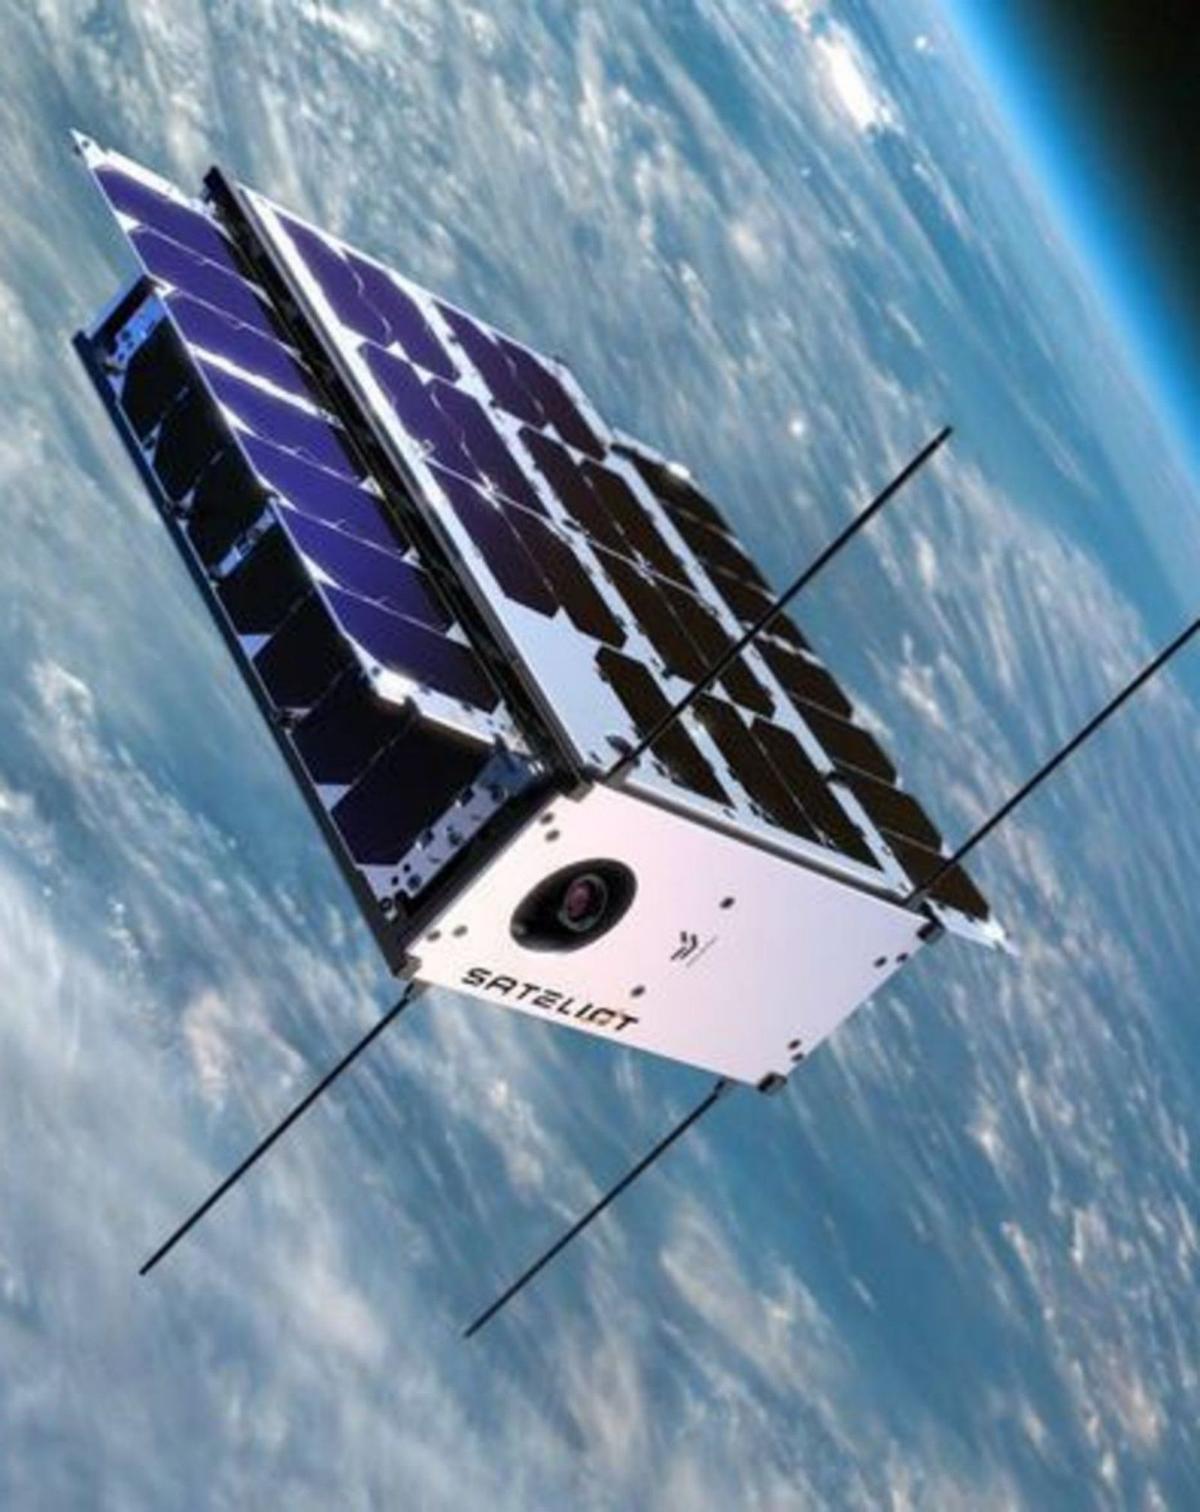 L’MWC posa el focus en el disruptiu negoci d’internet per satèl·lit